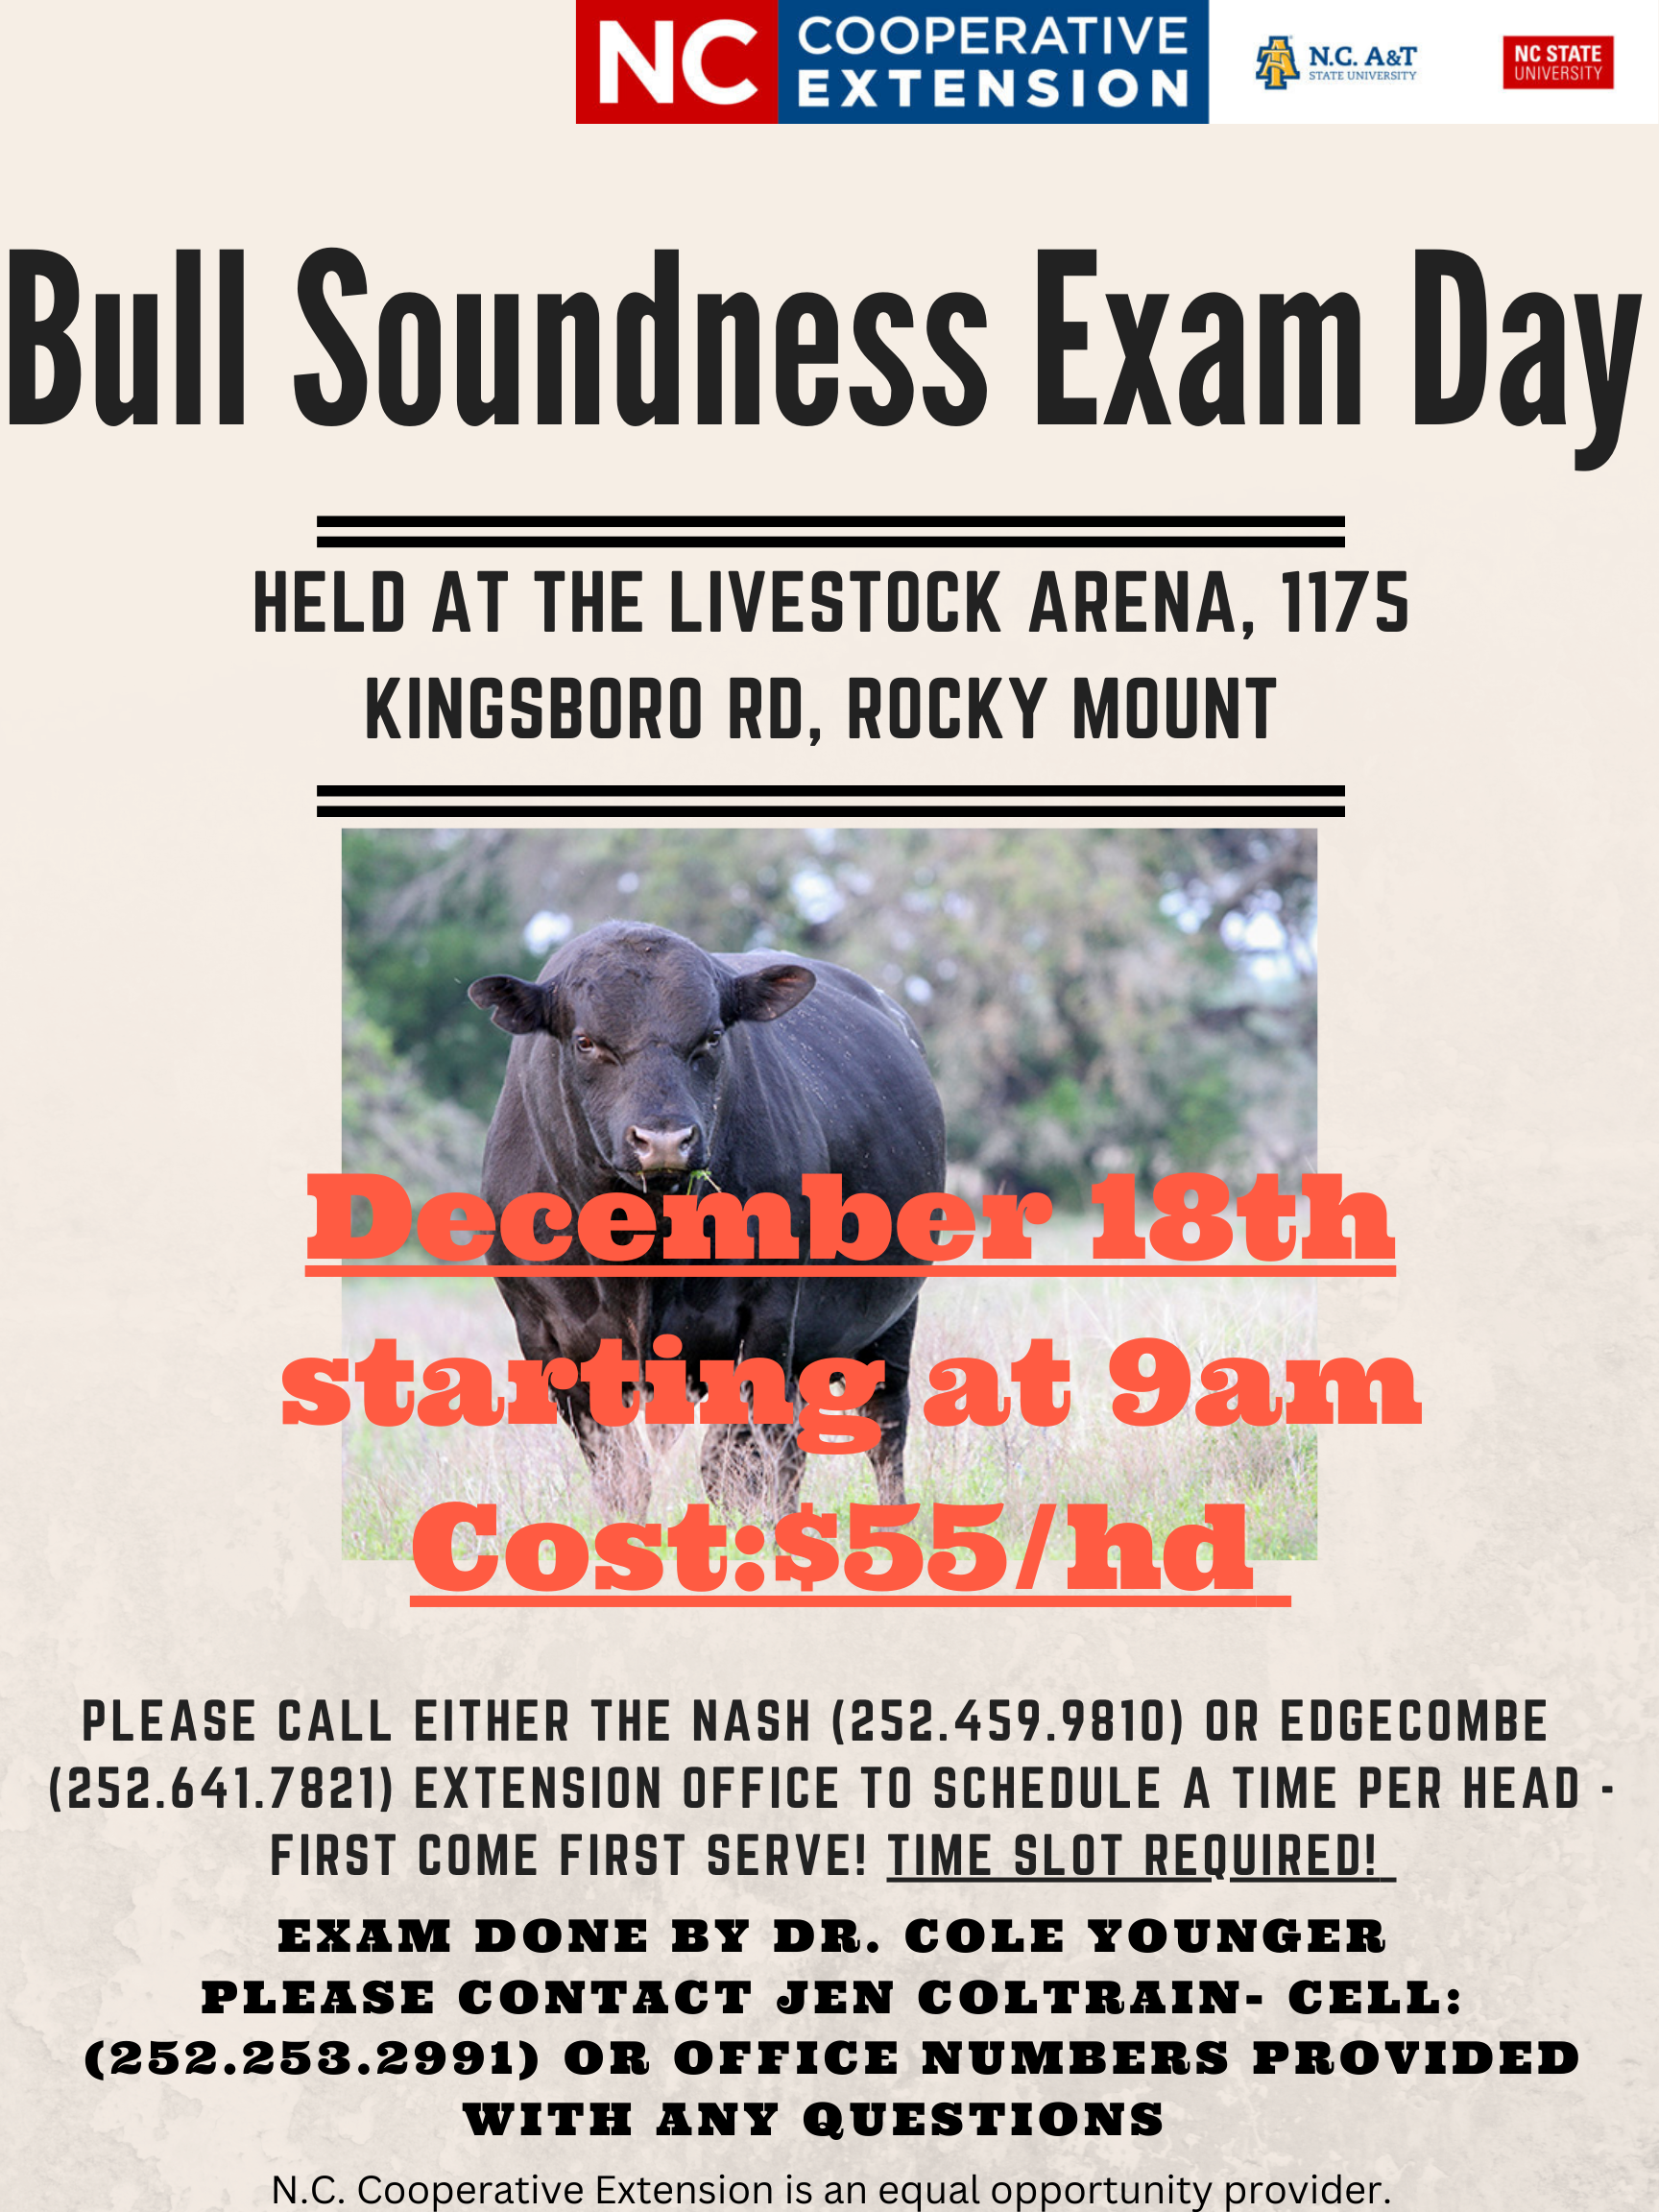 Bull Soundness Exam Day